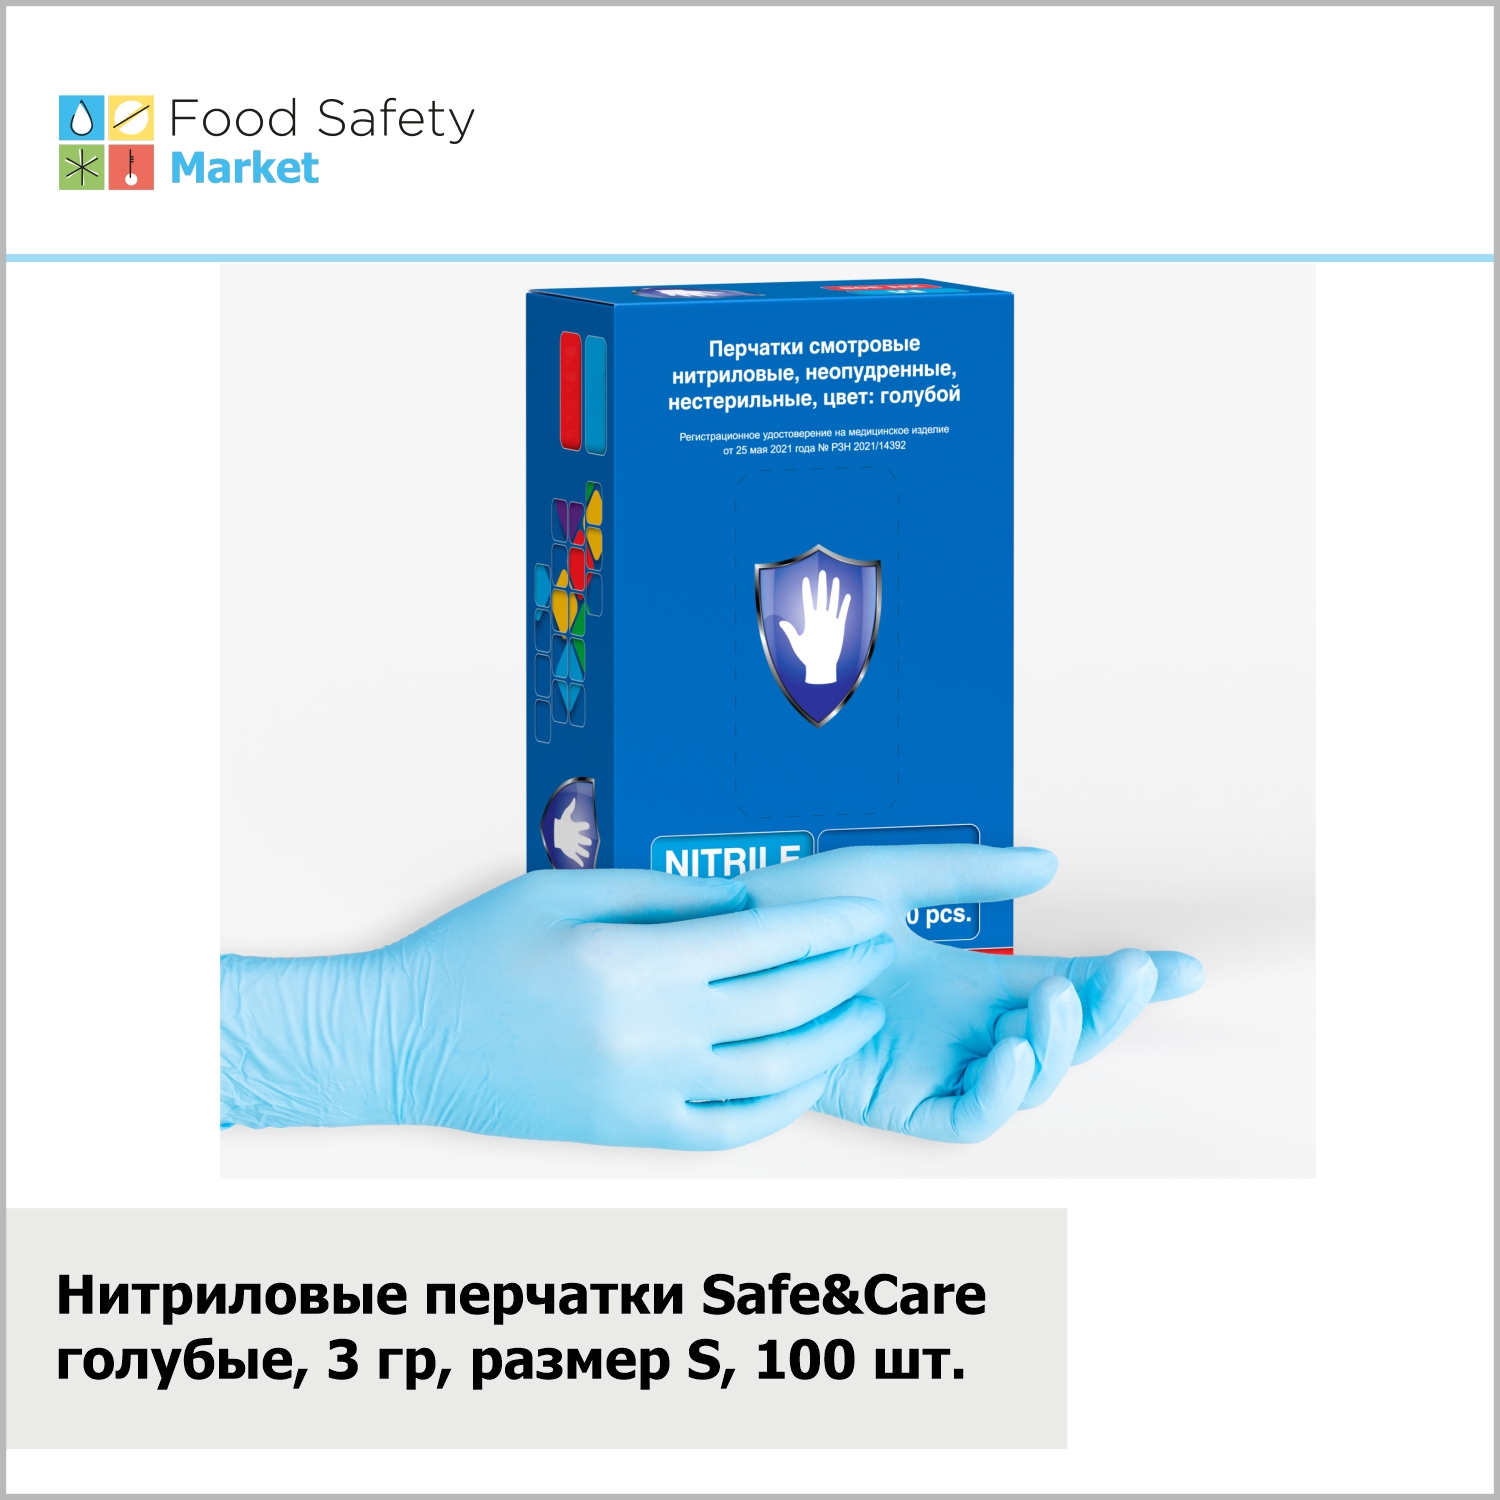 Нитриловые перчатки "Safe&Care" голубые, 3 гр, размер S, 100 шт. в упак.